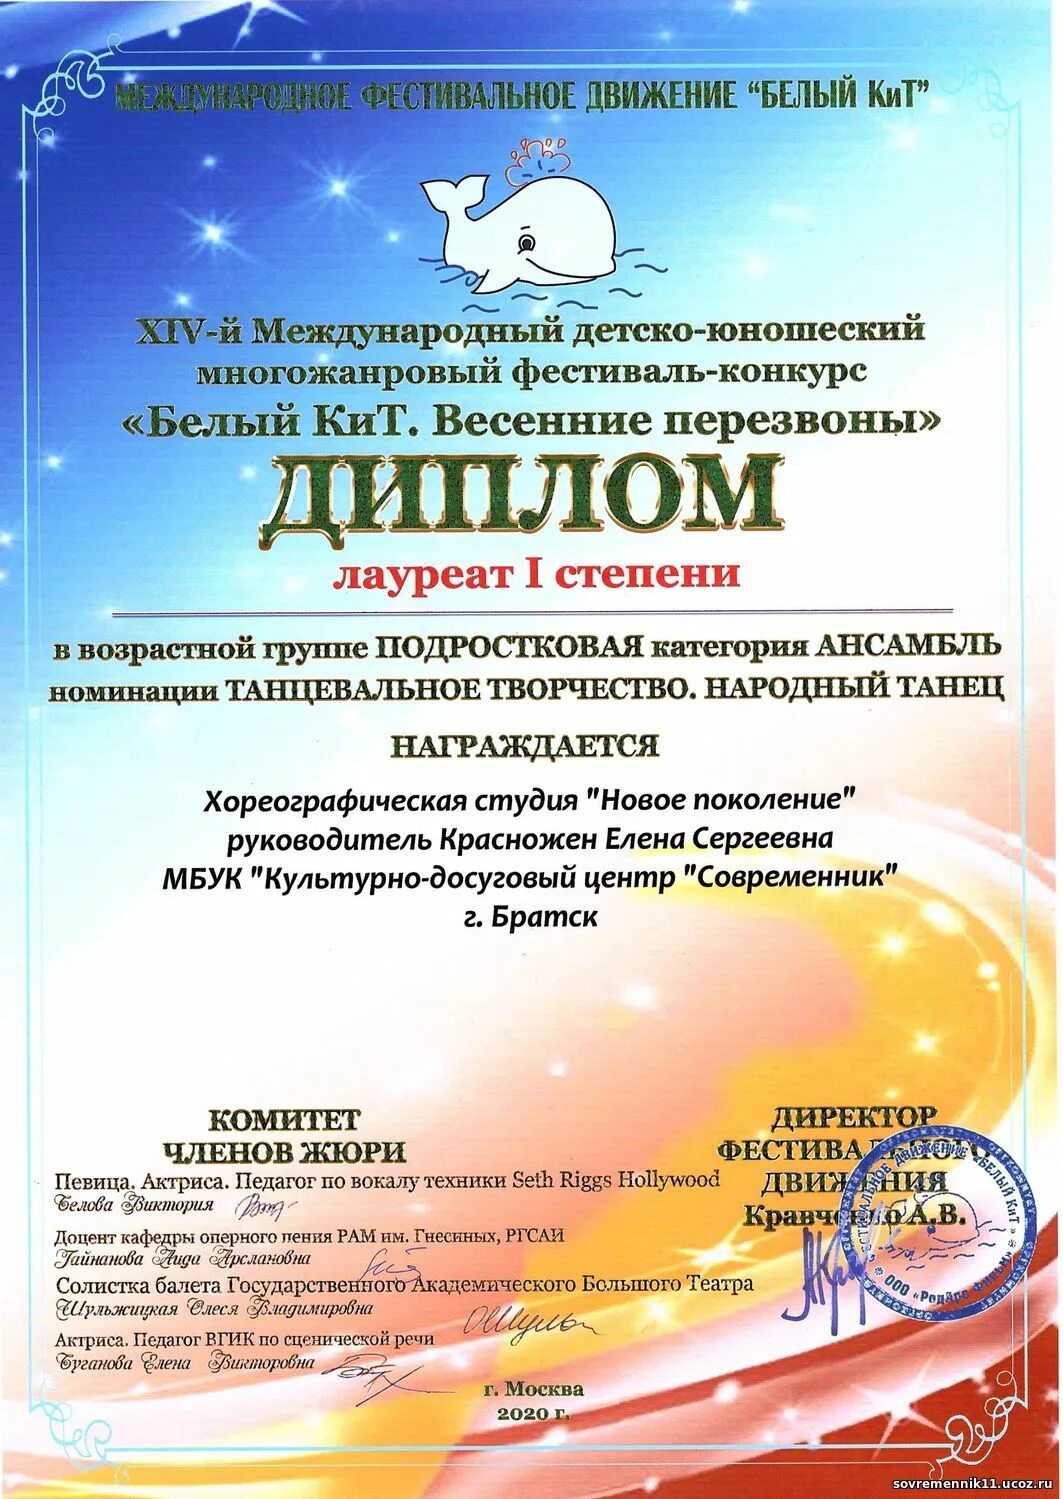 Кит 2020 Международный конкурс. Международный фестиваль Новгородский кит 2020 Великий Новгород.